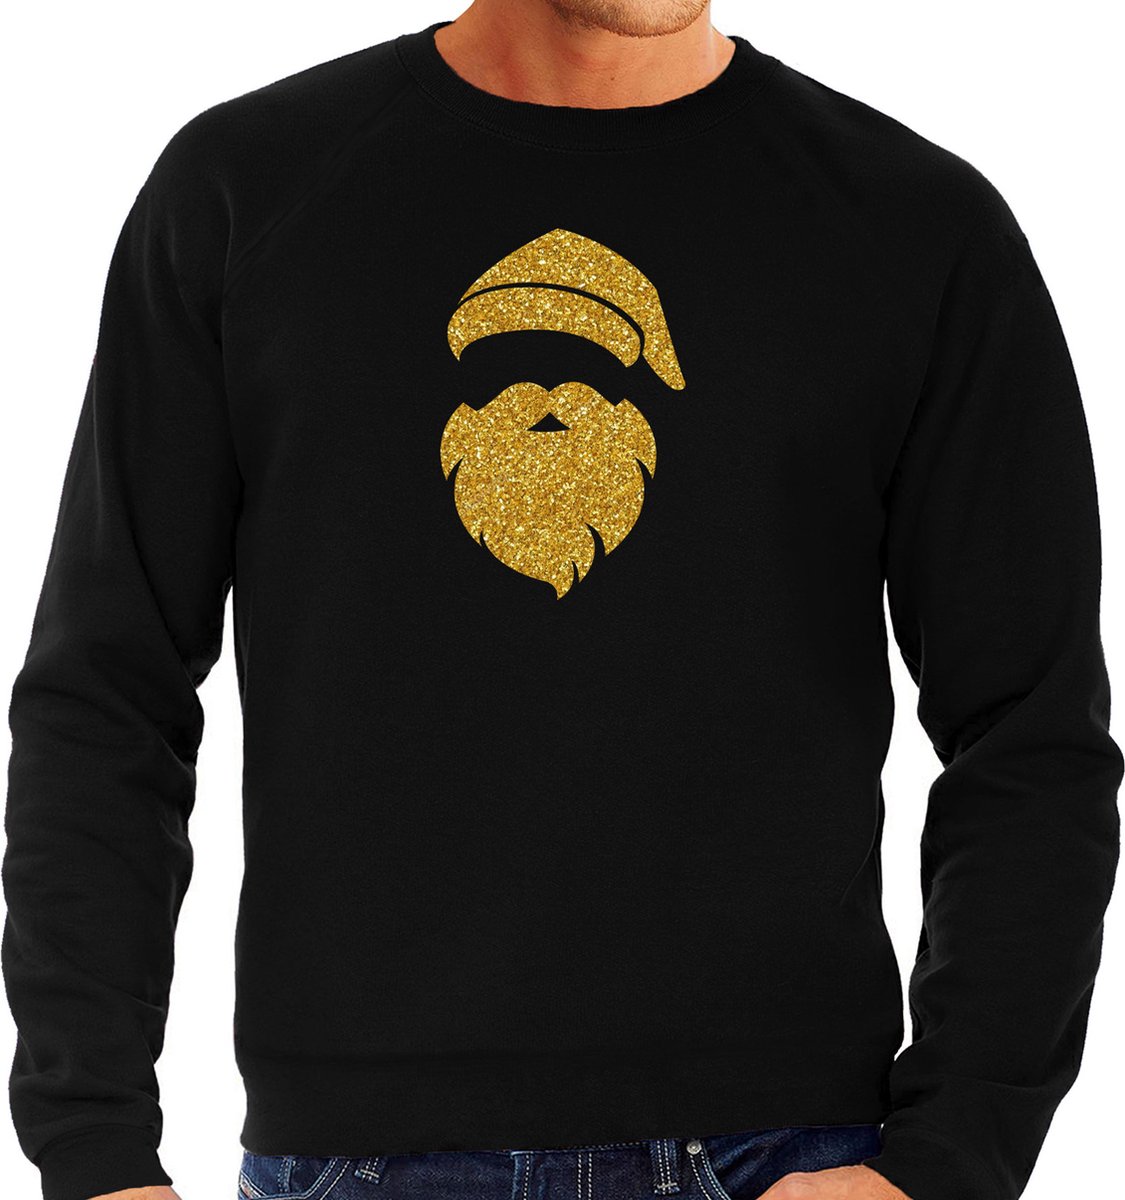 Kerstman hoofd Kerst trui - zwart met gouden glitter bedrukking - heren - Kerst sweaters / Kerst outfit S